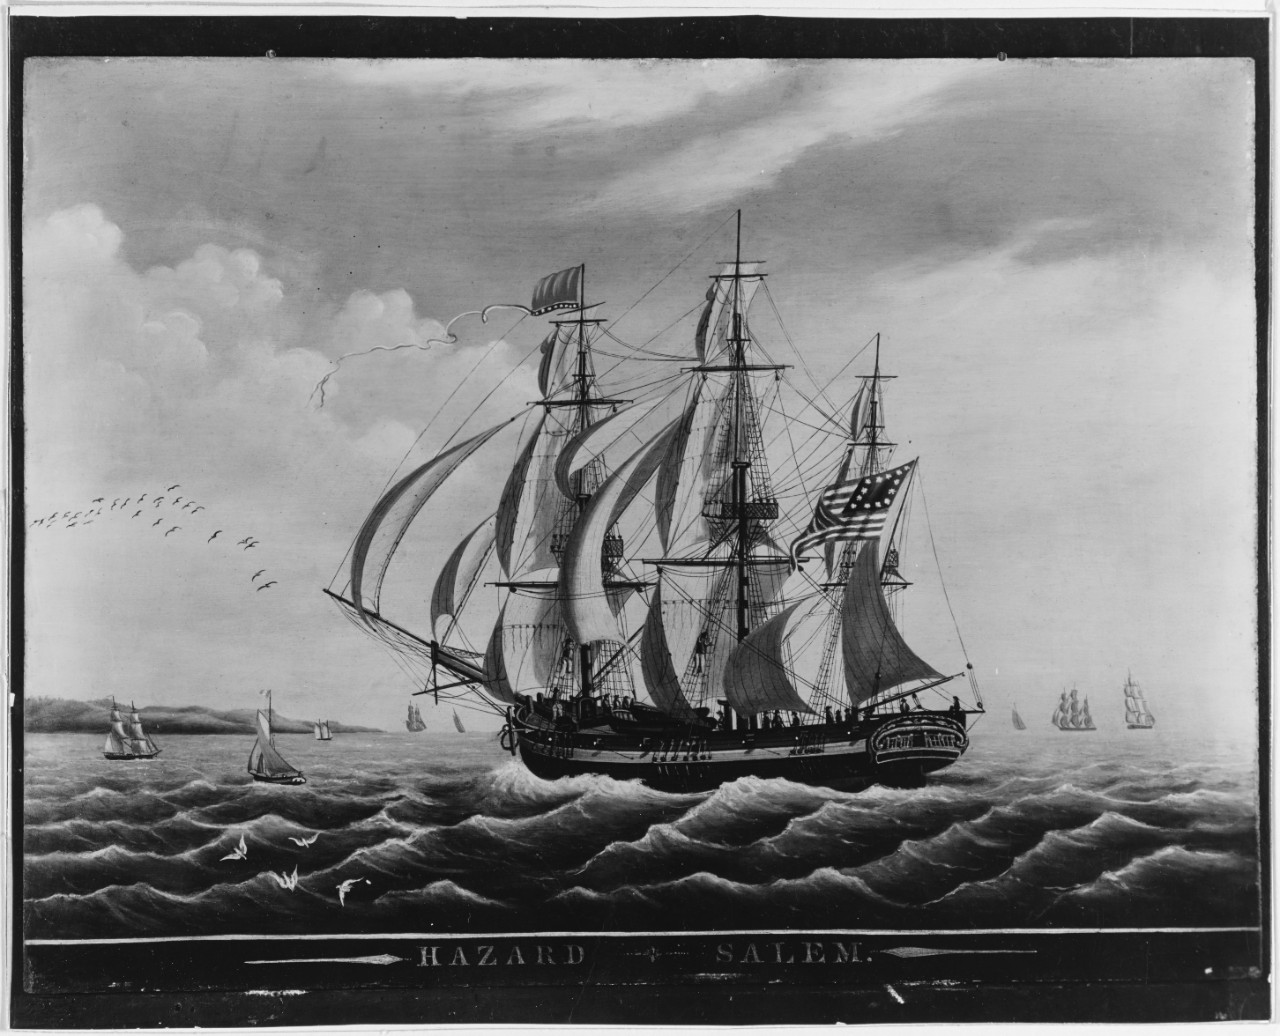 Ship: HAZARD, of Salem, Massachusetts.